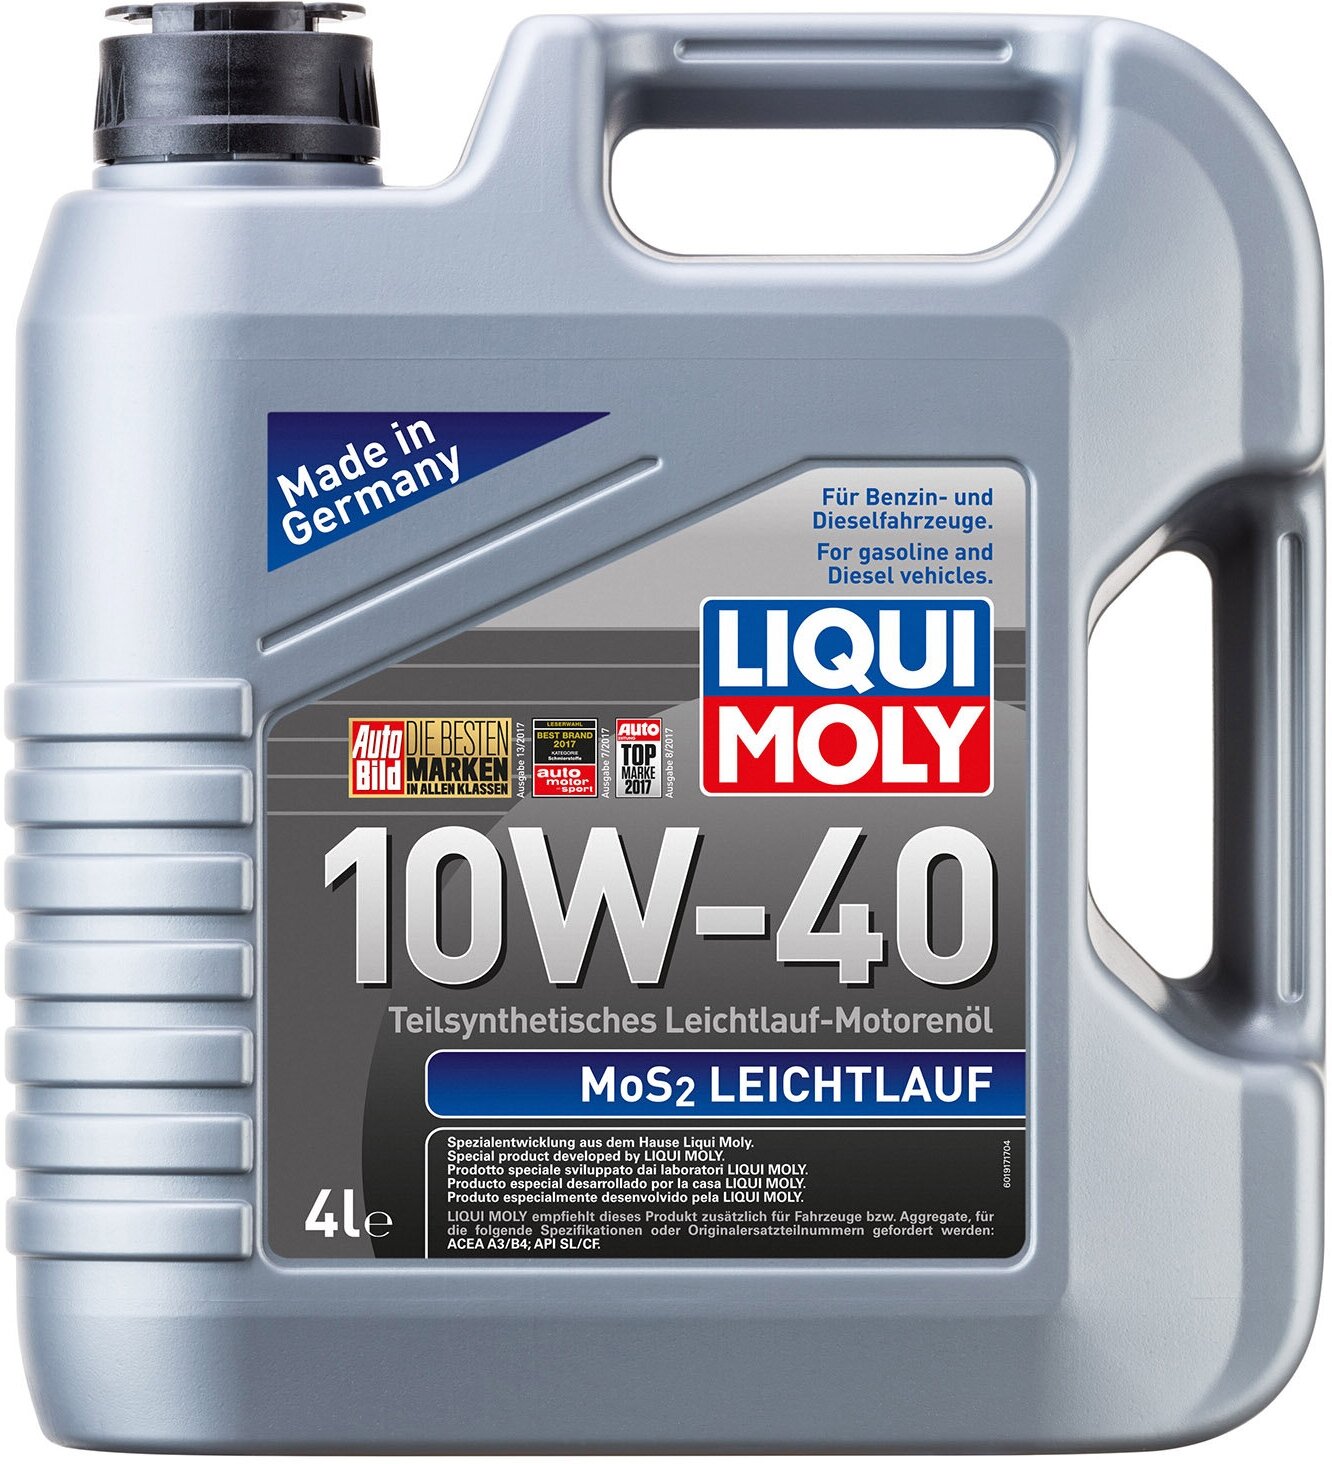 Масло моторное LIQUI MOLY MoS2 Leichtlauf 10W40 4л SL/CF